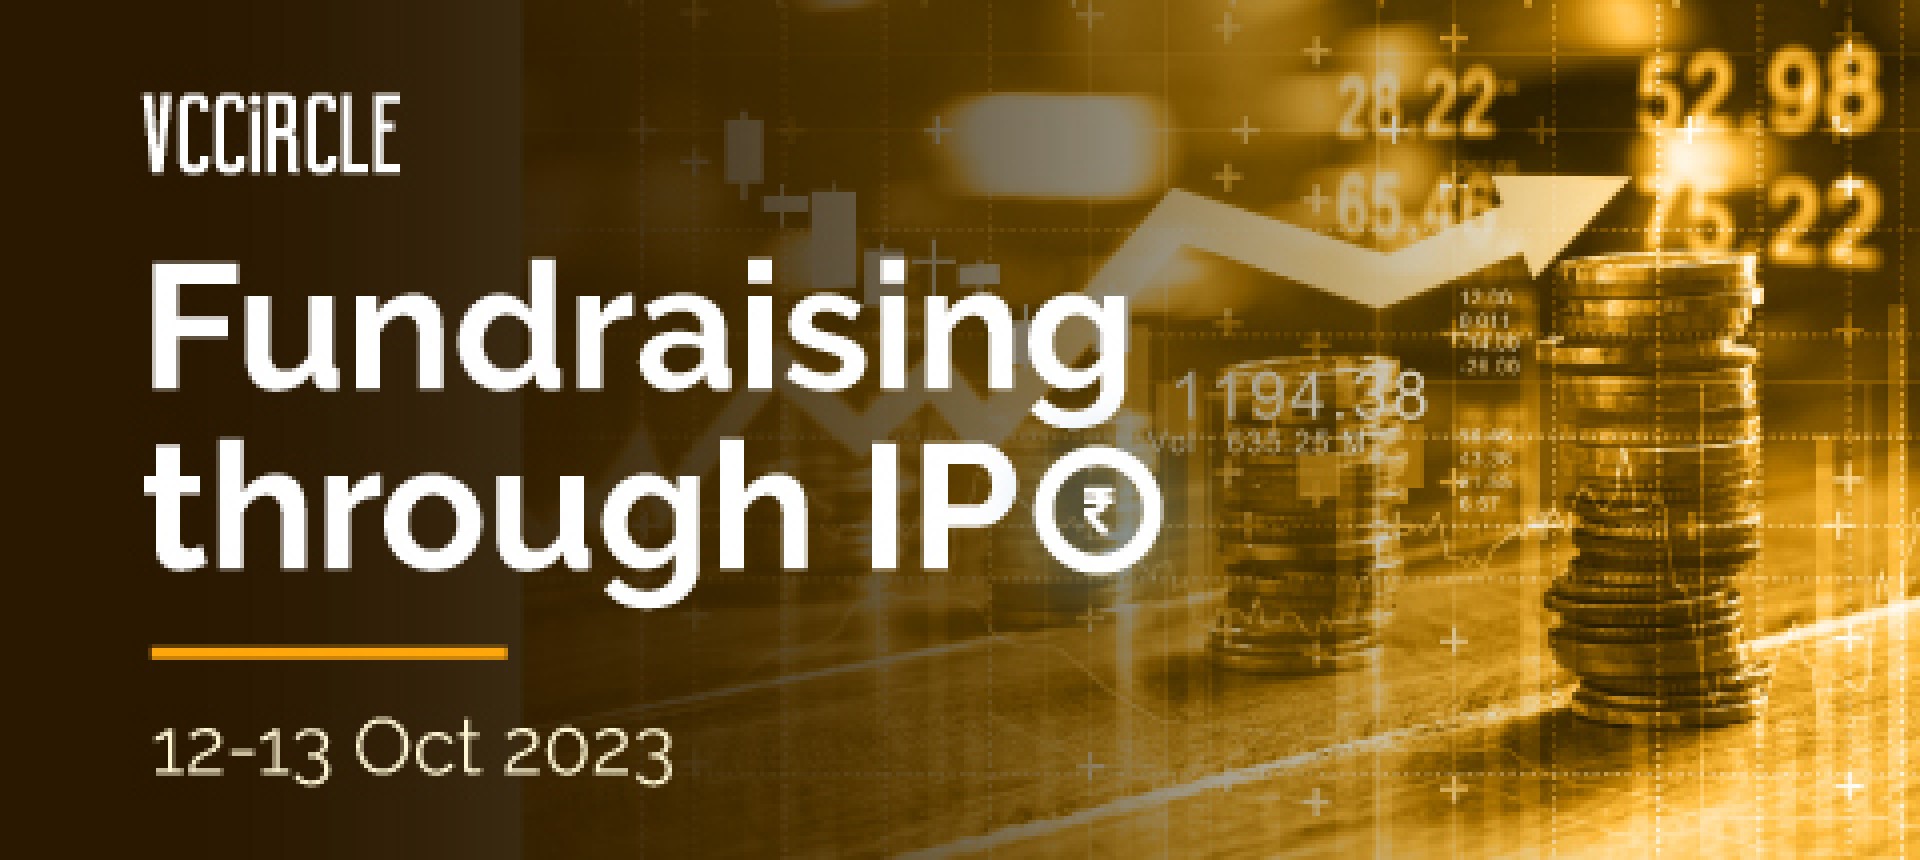 Fundraising through IPO